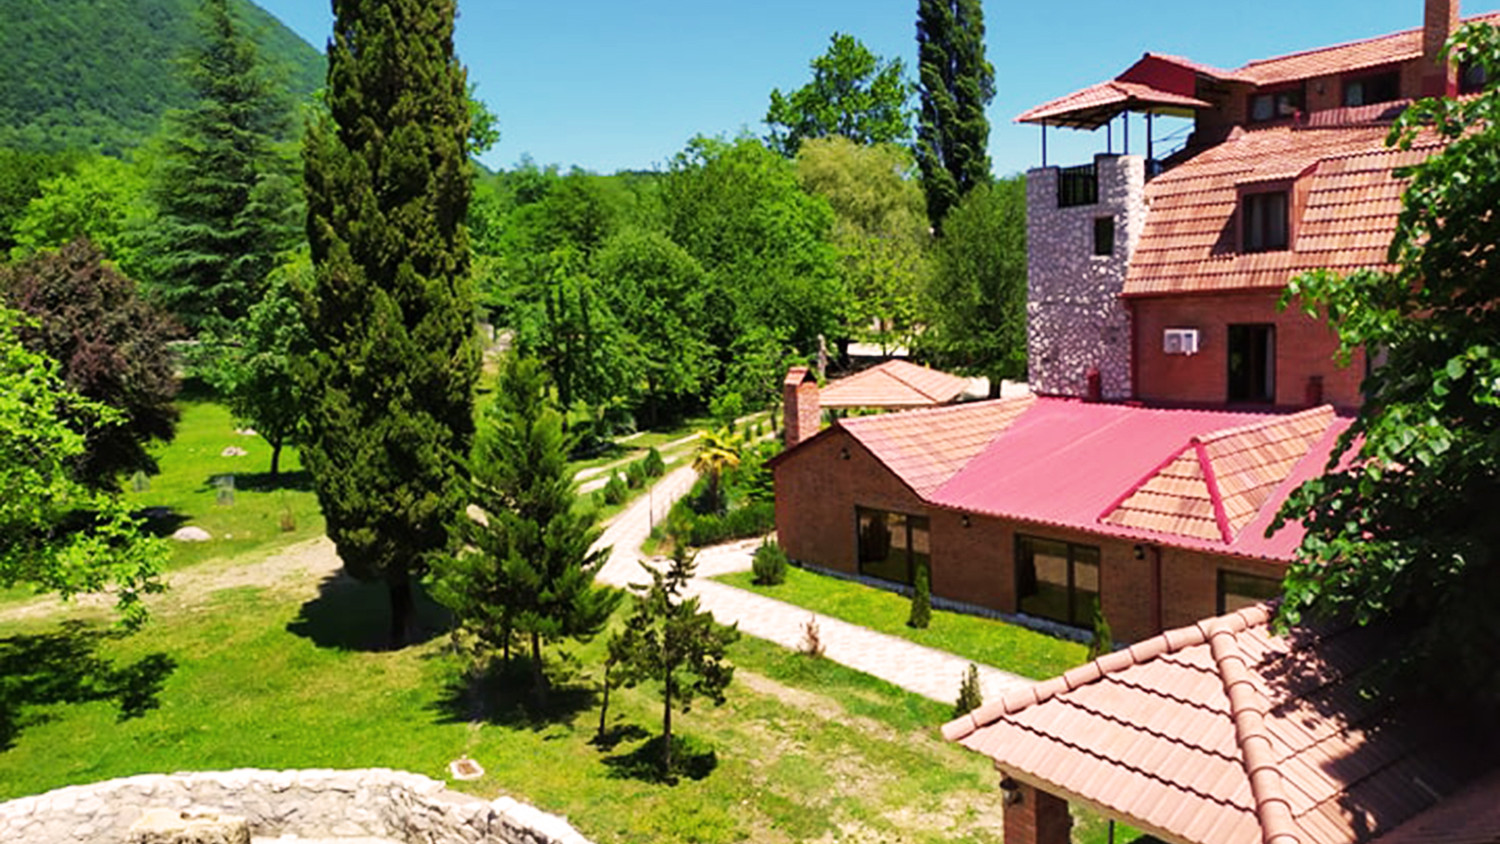 Chateau Chikovani winery, Imereti